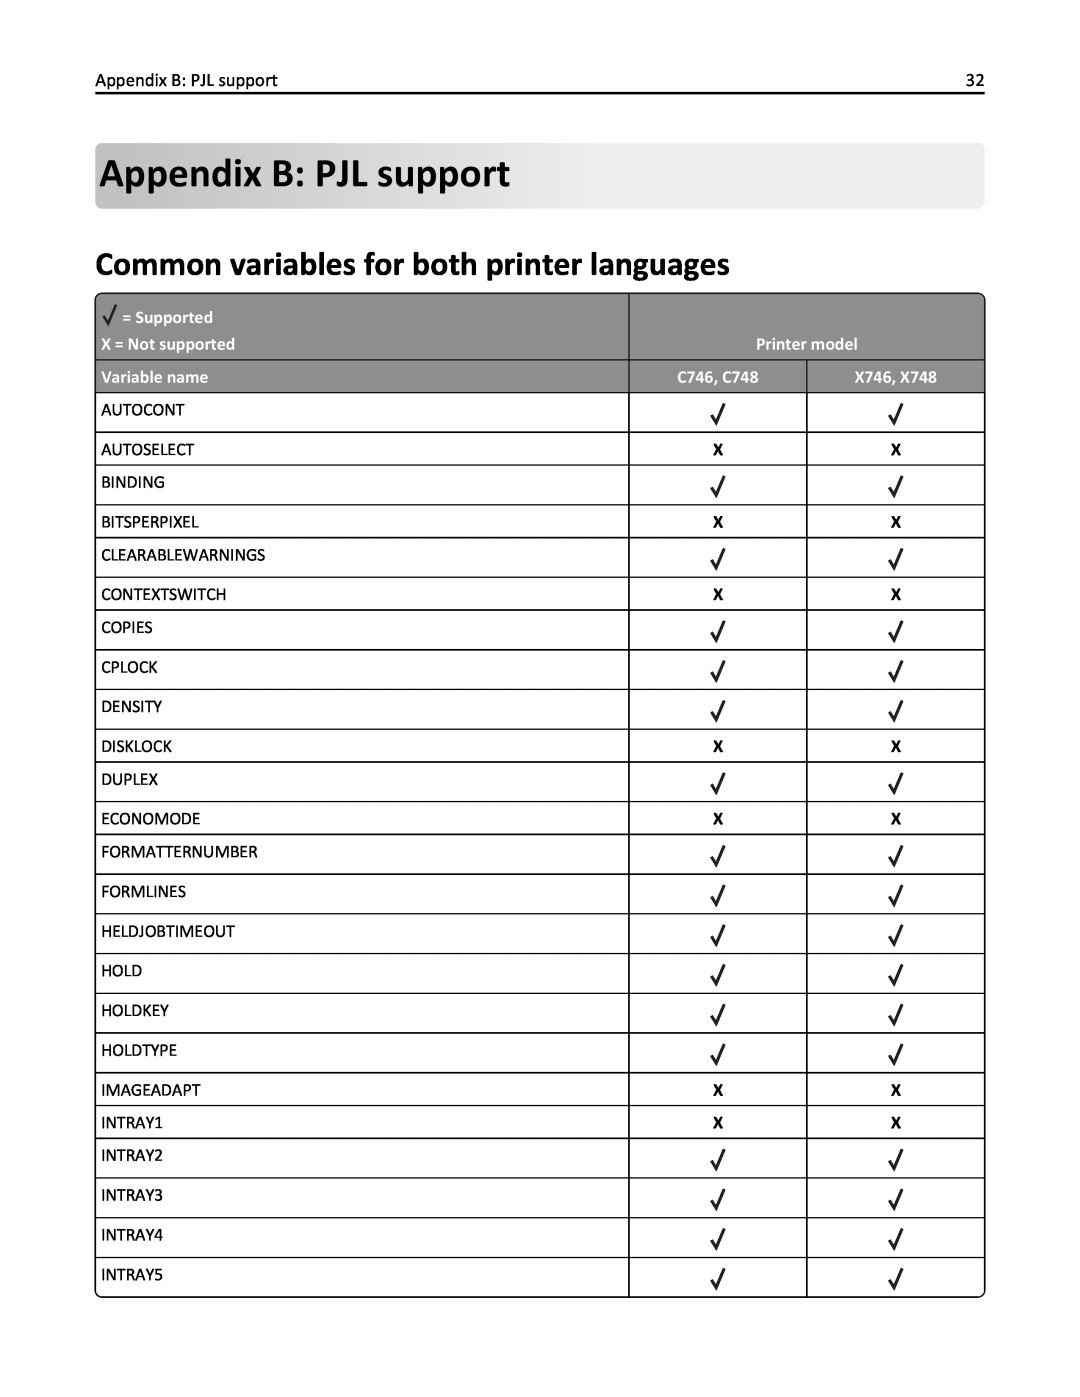 Lexmark 746n, 748dte, 748de, 746de, 746dn, 746dtn, 748e AppendixB: PJL support, Common variables for both printer languages 